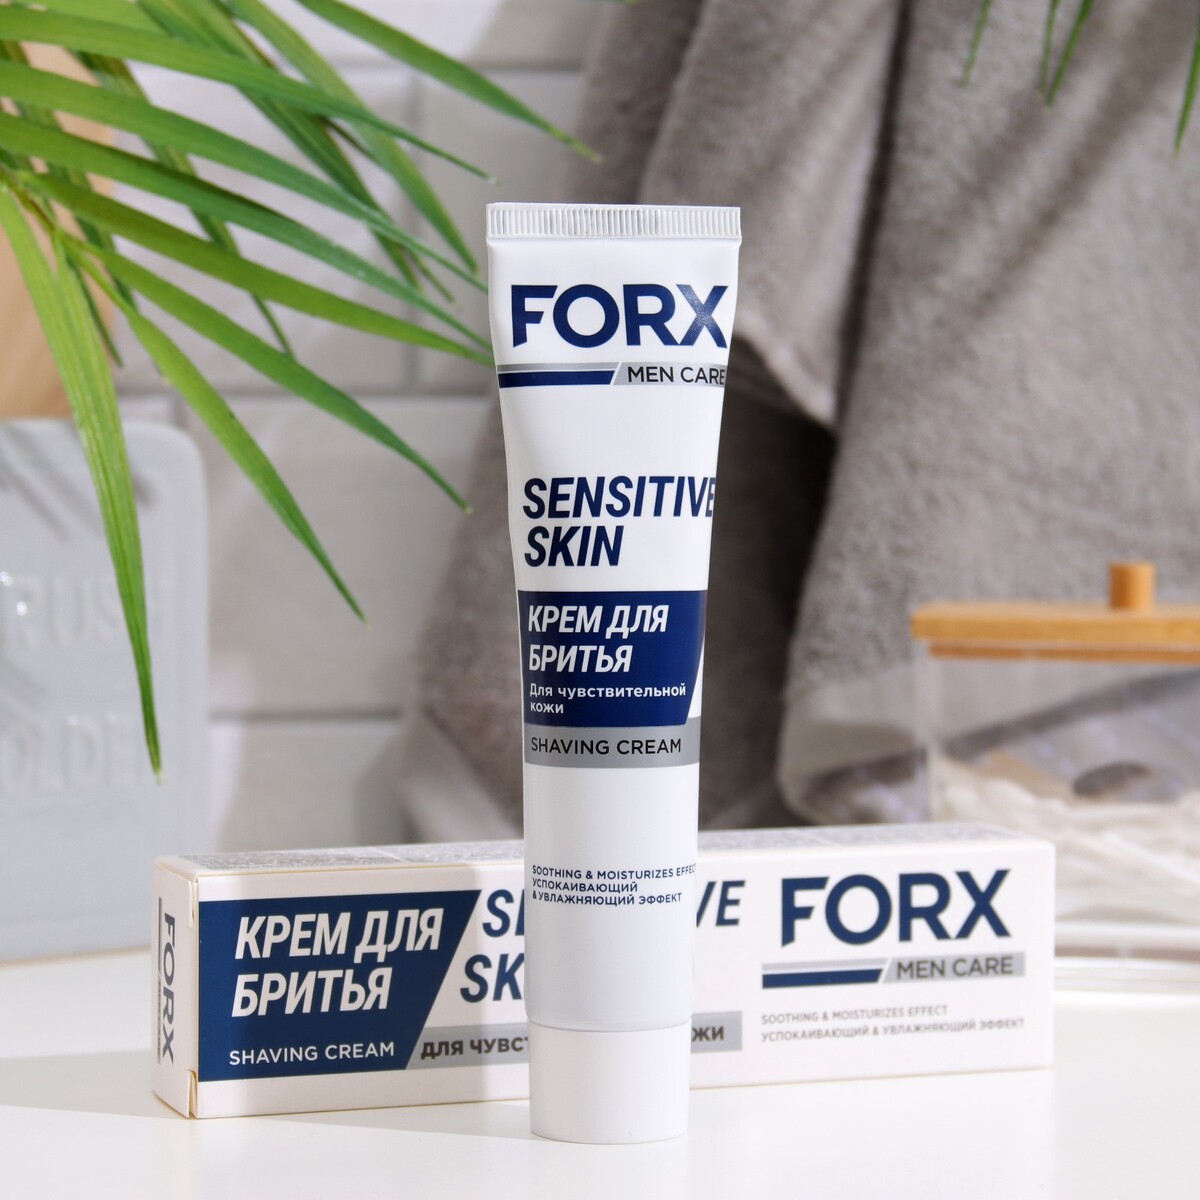 Крем для бритья forx men care sensitive skin для чувствительной кожи, 50 мл крем для бритья arko men extra sensitive 65 г